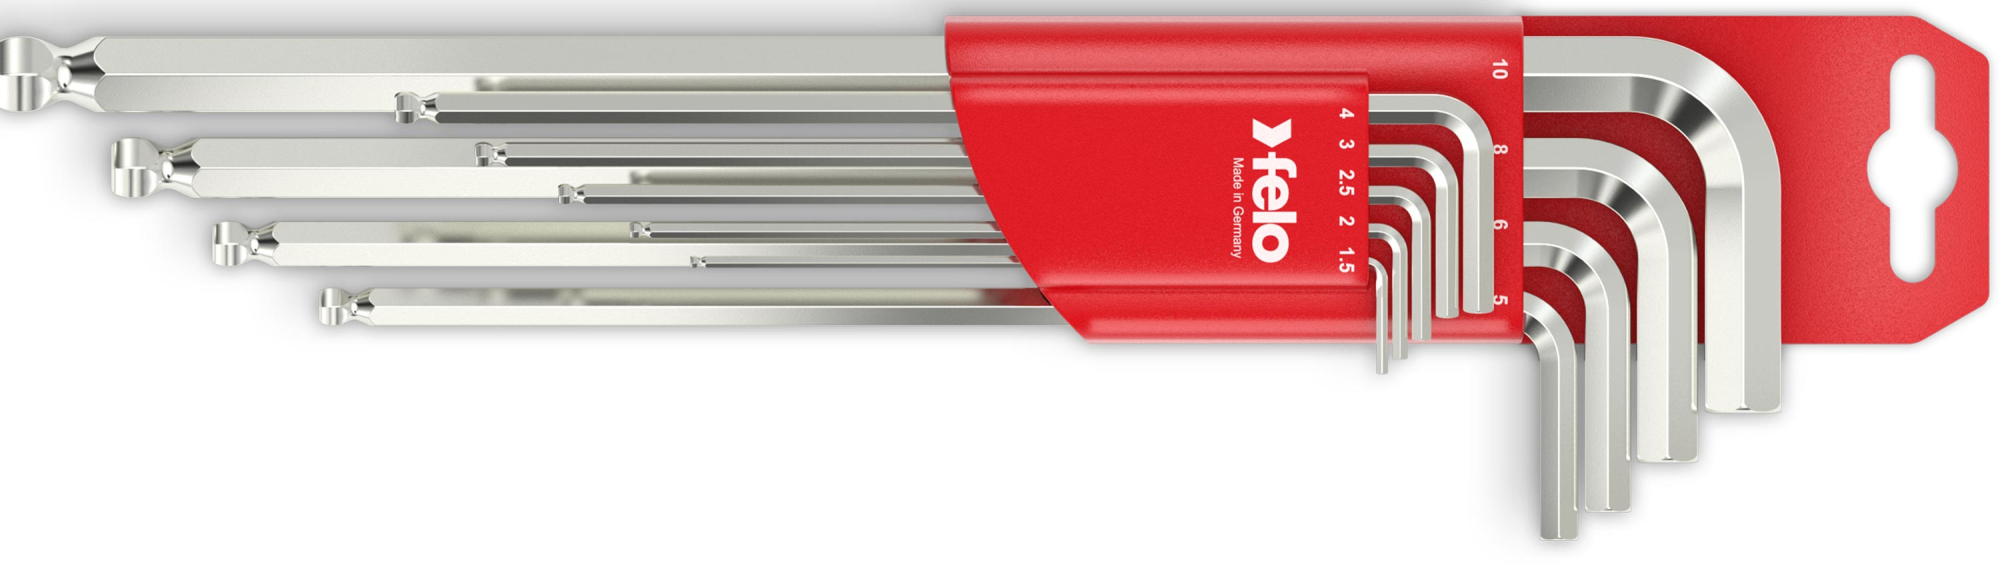 Фото Felo Набор Г-образных ключей с шарообразным наконечником HEX (SW), 9 ед FLO-36500911 